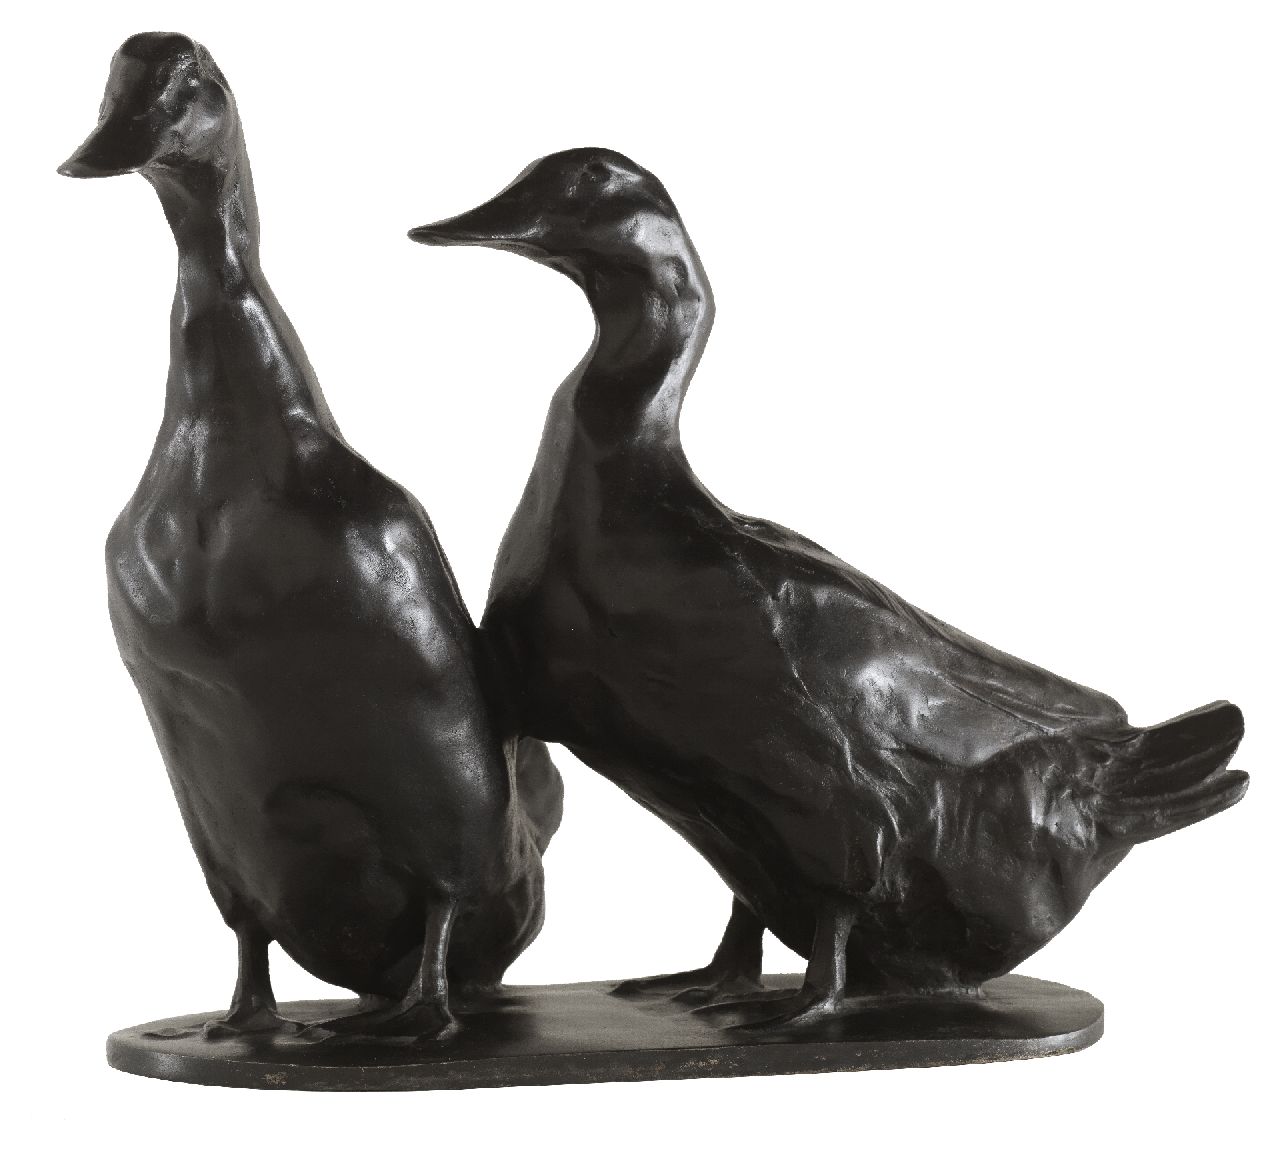 Zügel W.  | Wilhelm 'Willy' Zügel, Two ducks, bronze with a black patina 22.3 x 25.5 cm, signed on the base